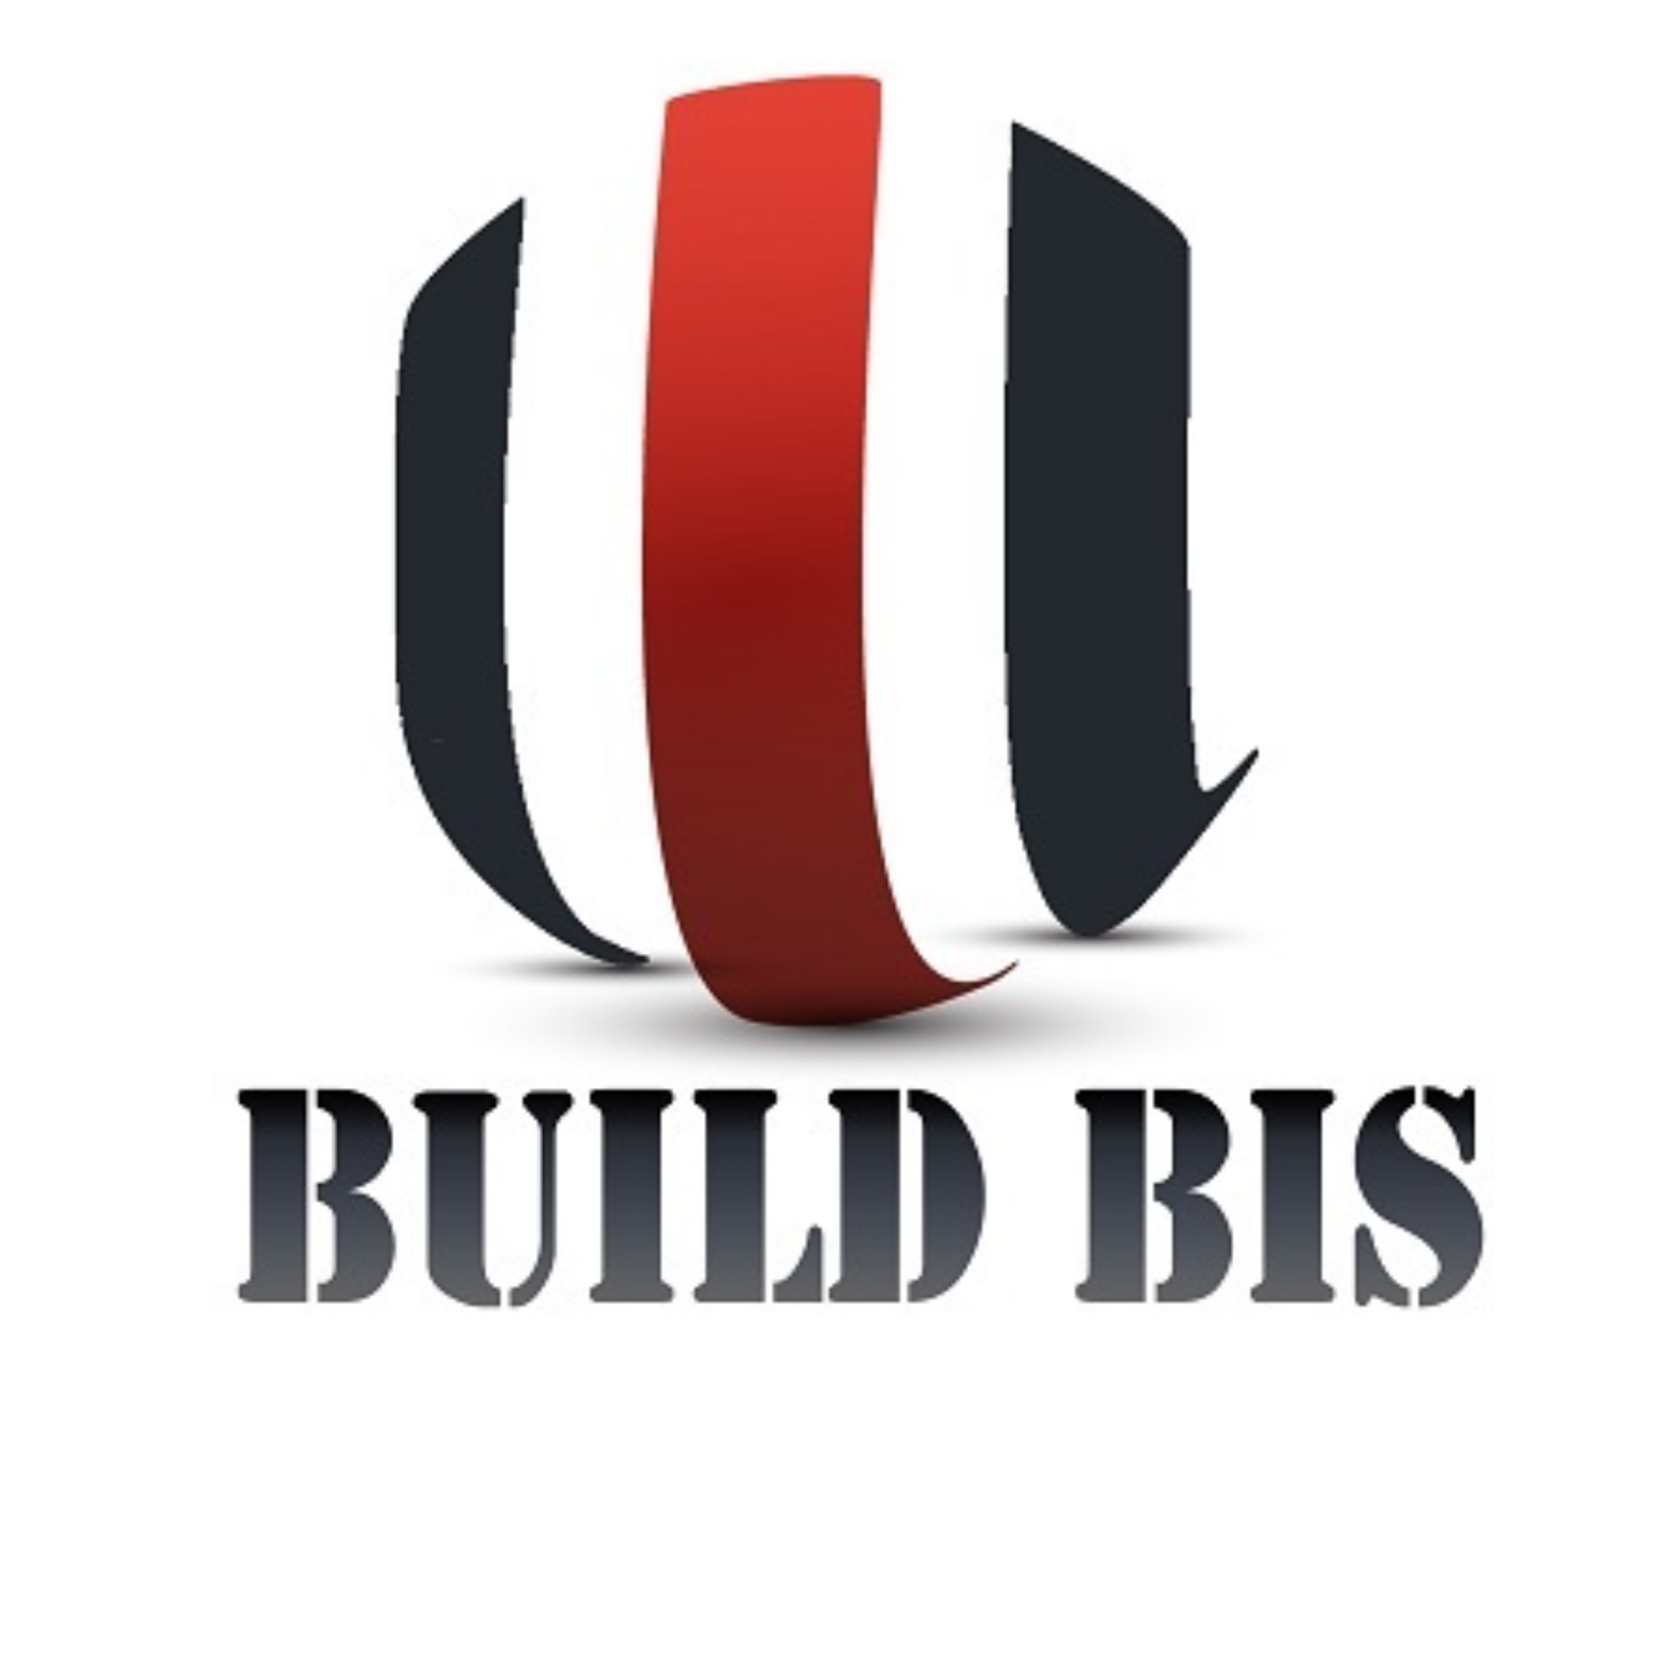 Buildbis